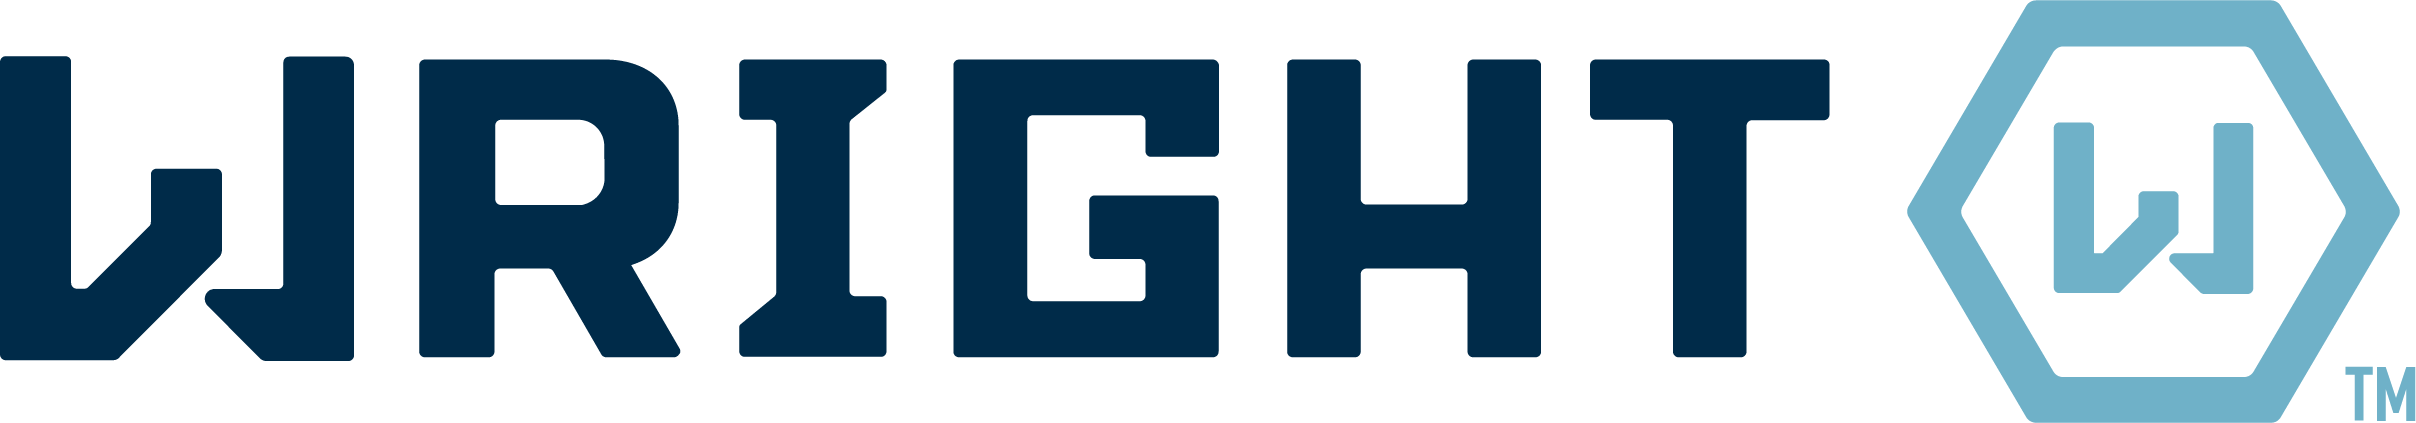 wright tool logo